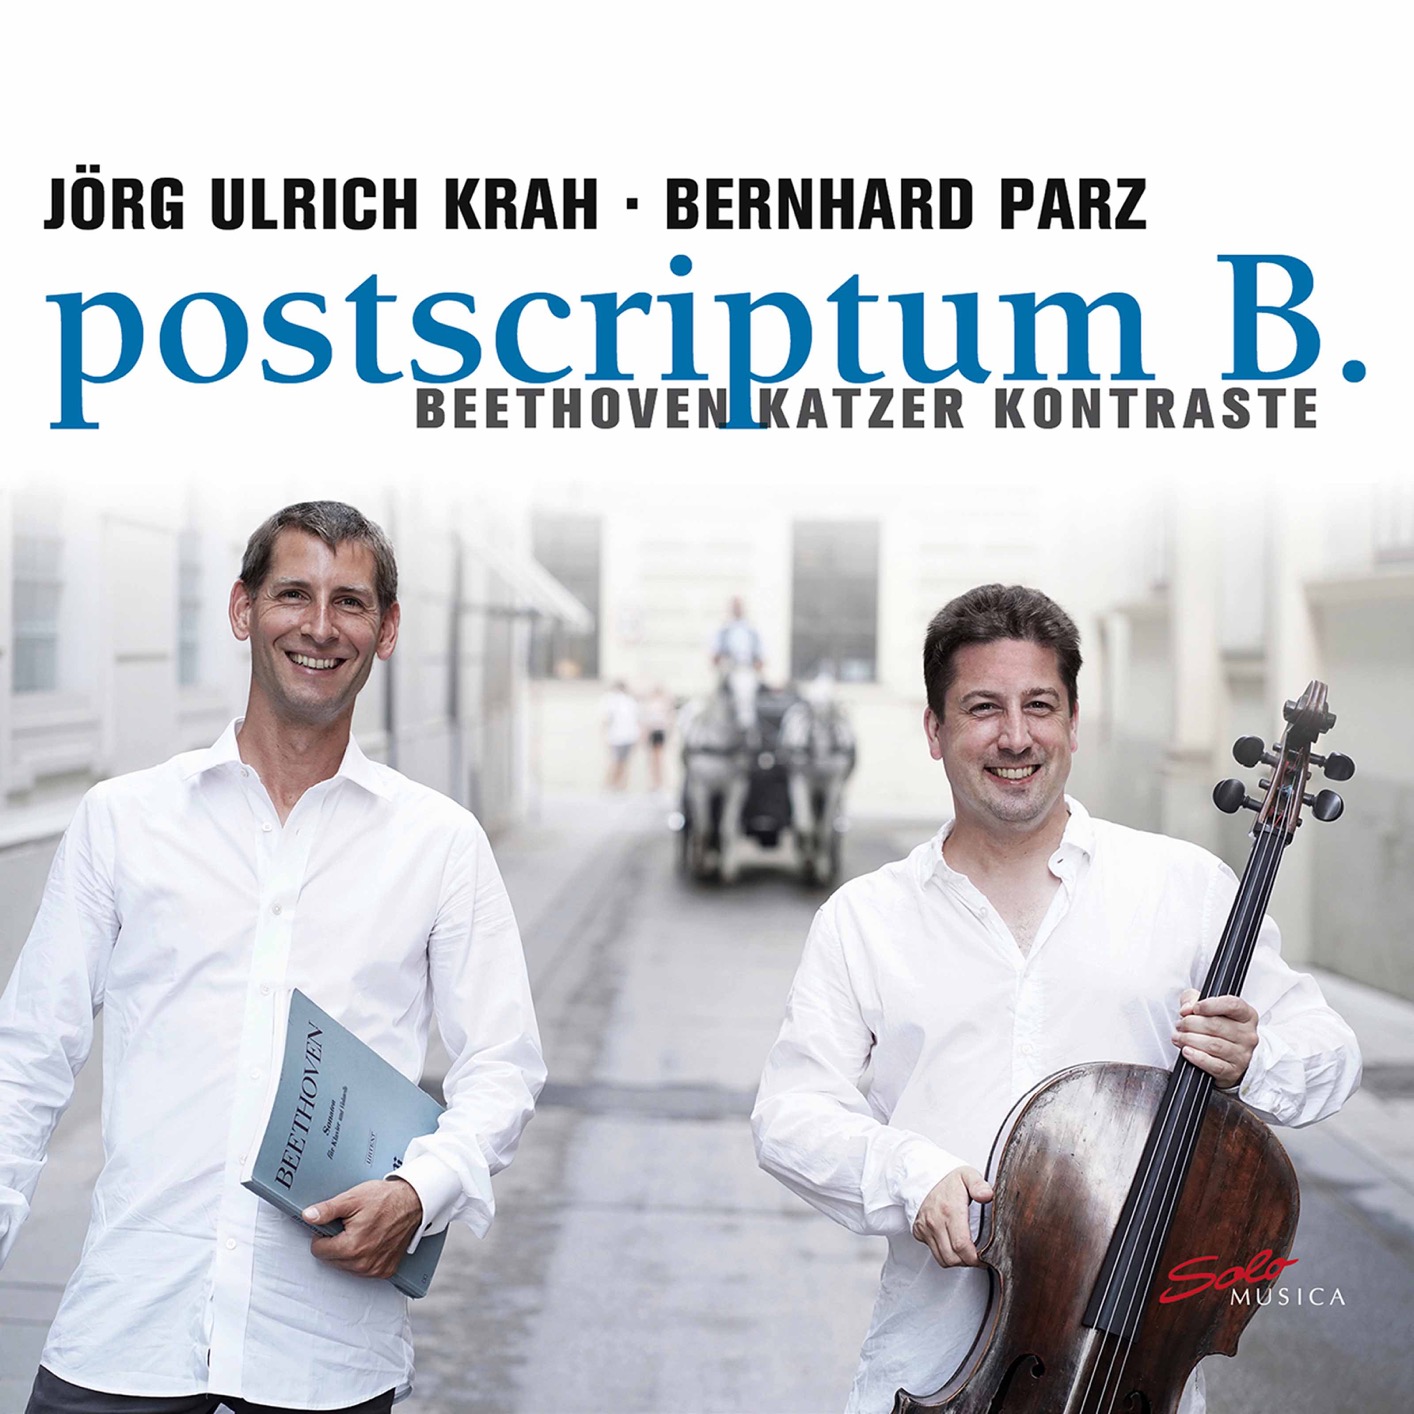 Jorg Ulrich Krah & Bernhard Parz - Postscriptum B. (2020) [FLAC 24bit/96kHz]